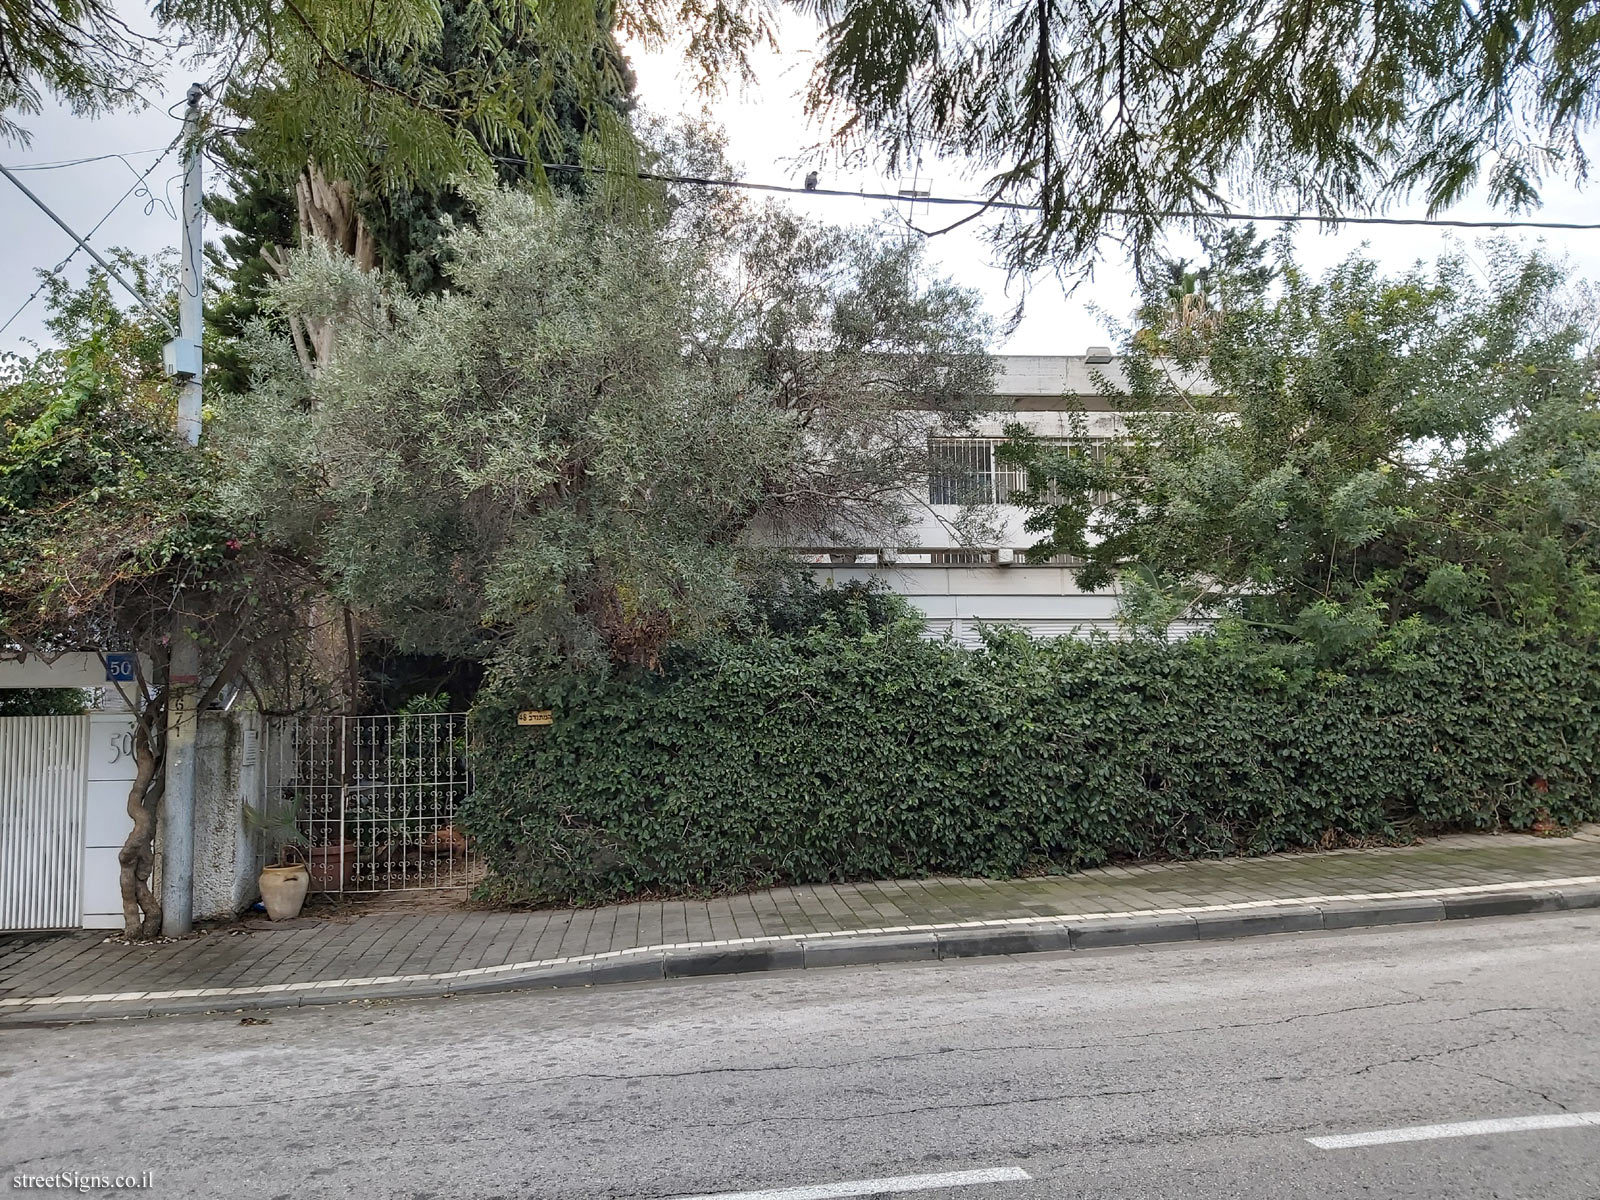 The house of Ephraim Kishon - HaMitnadev St 48, Tel Aviv-Yafo, Israel